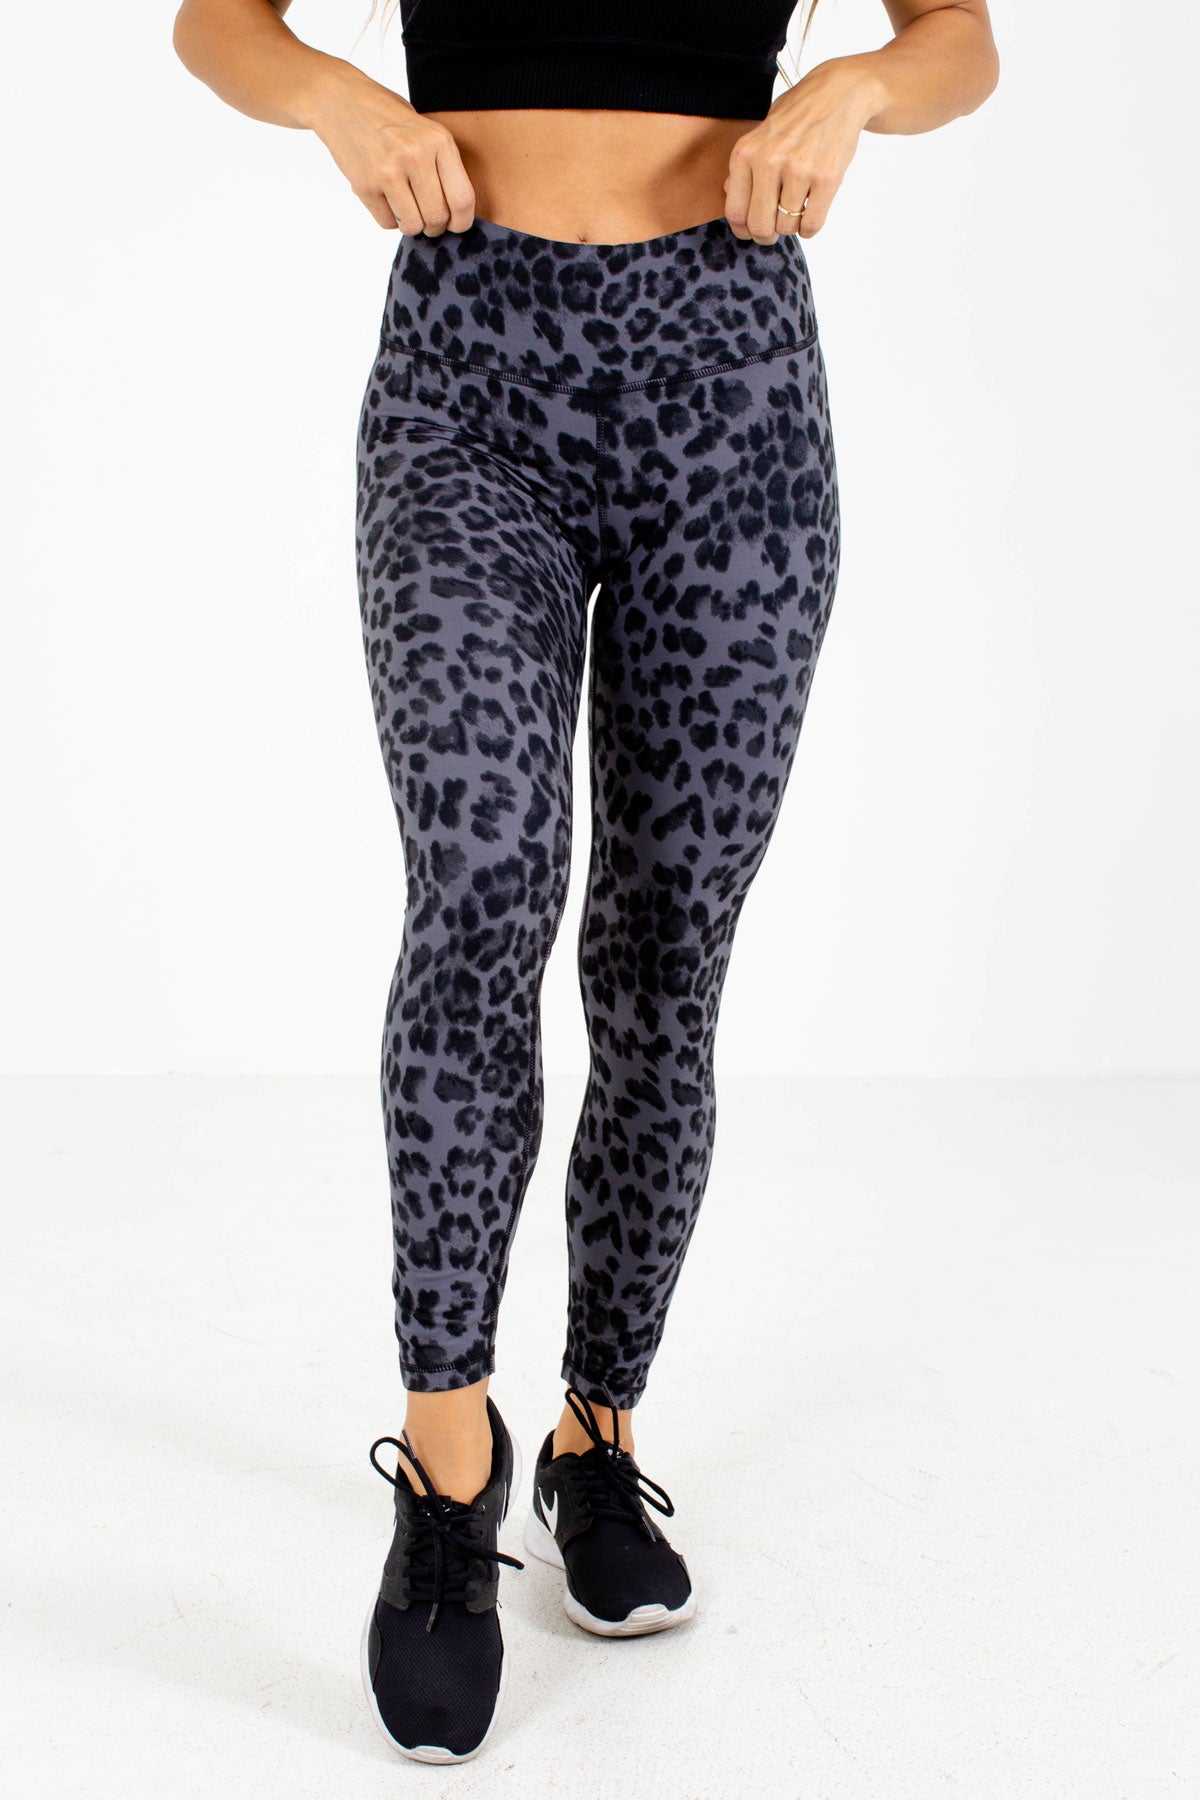 Leopard Print Athletic Leggings for Women